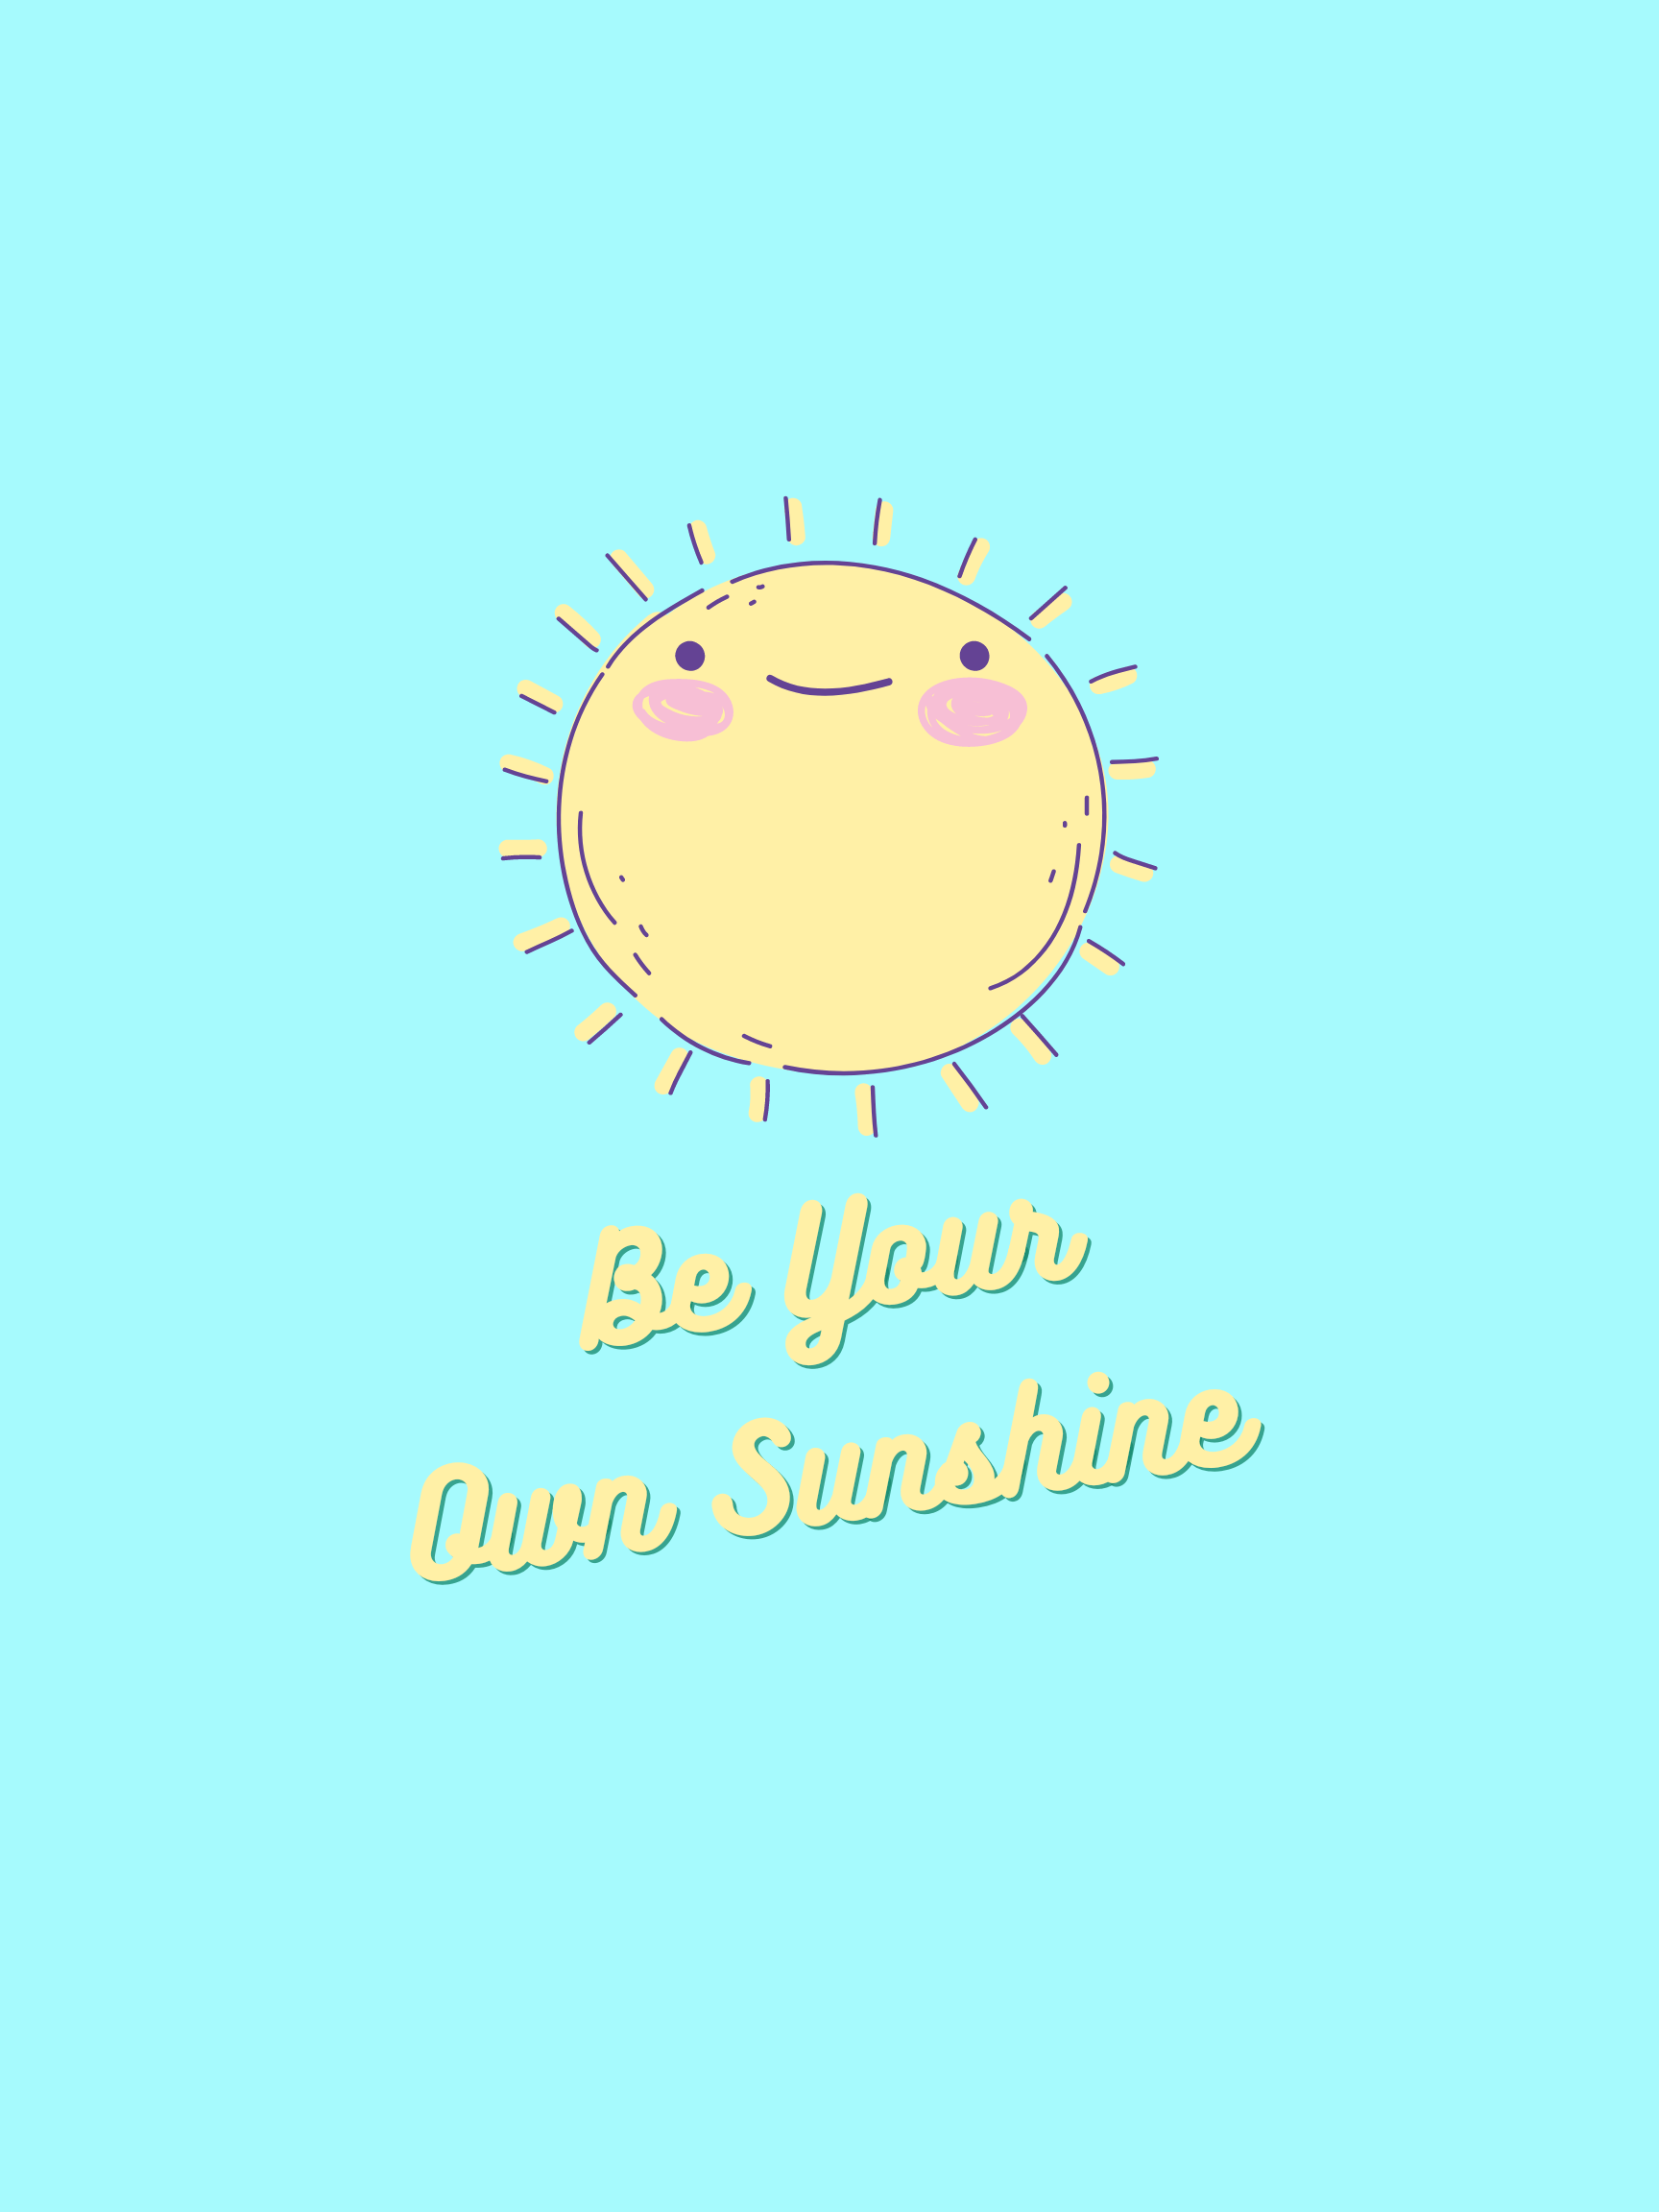 Be your own sunshine - Sunshine